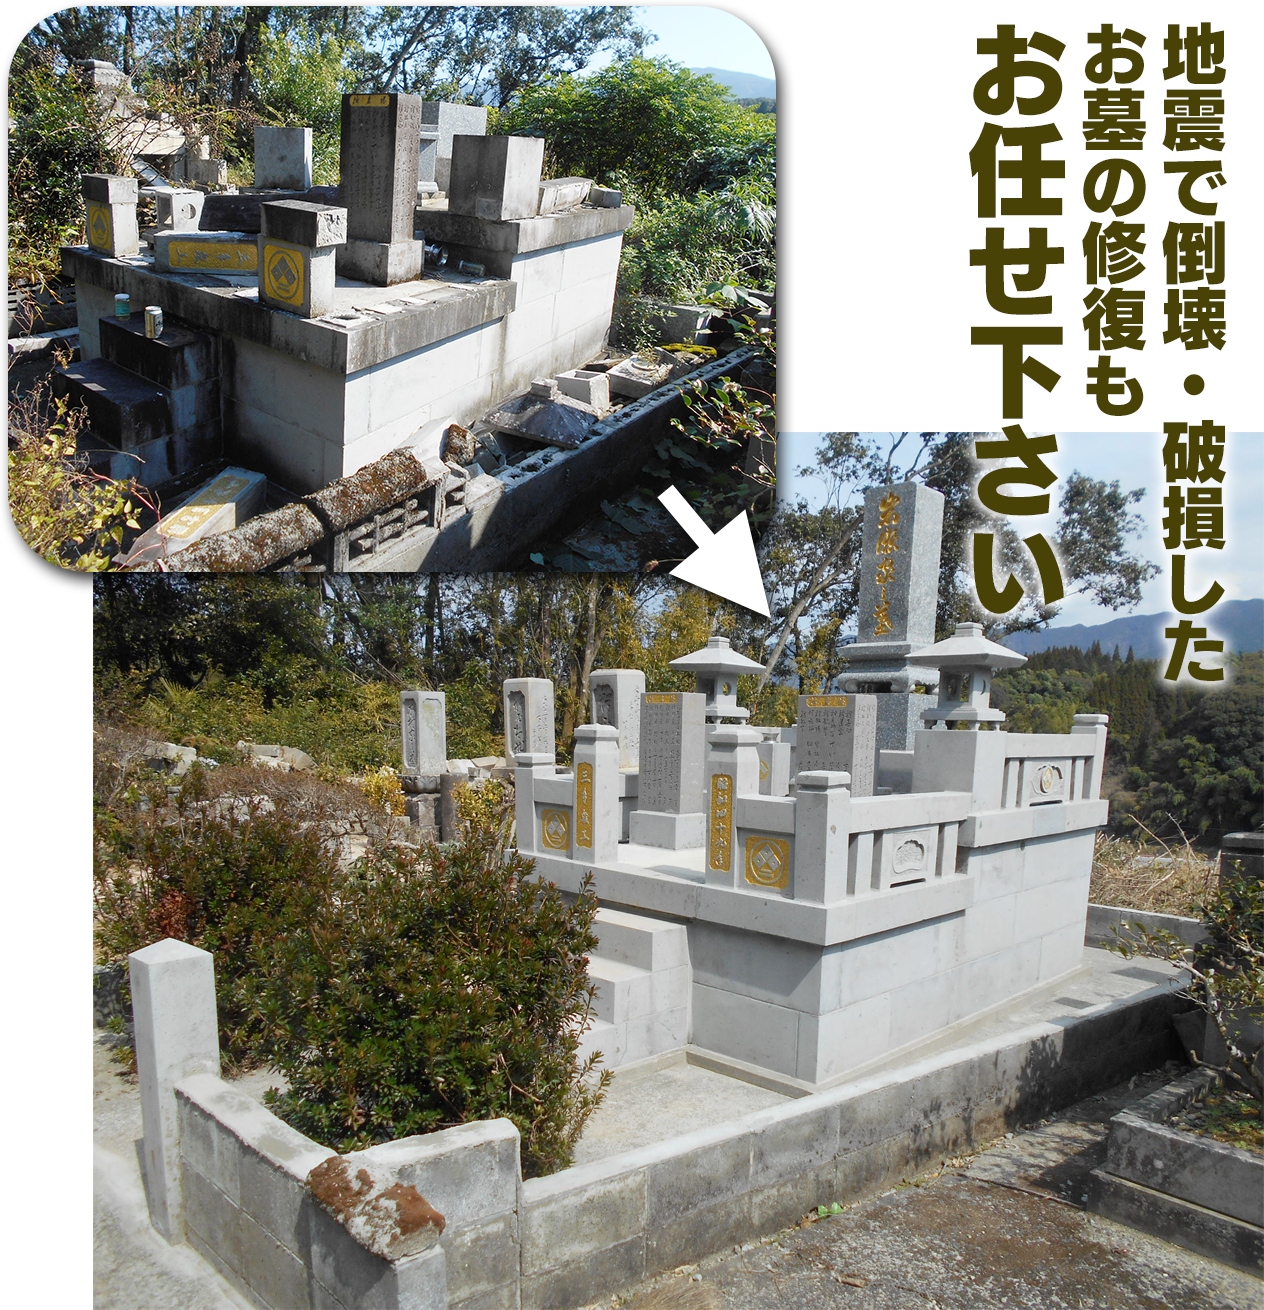 地震で倒壊・破損したお墓の修理もお任せ下さい